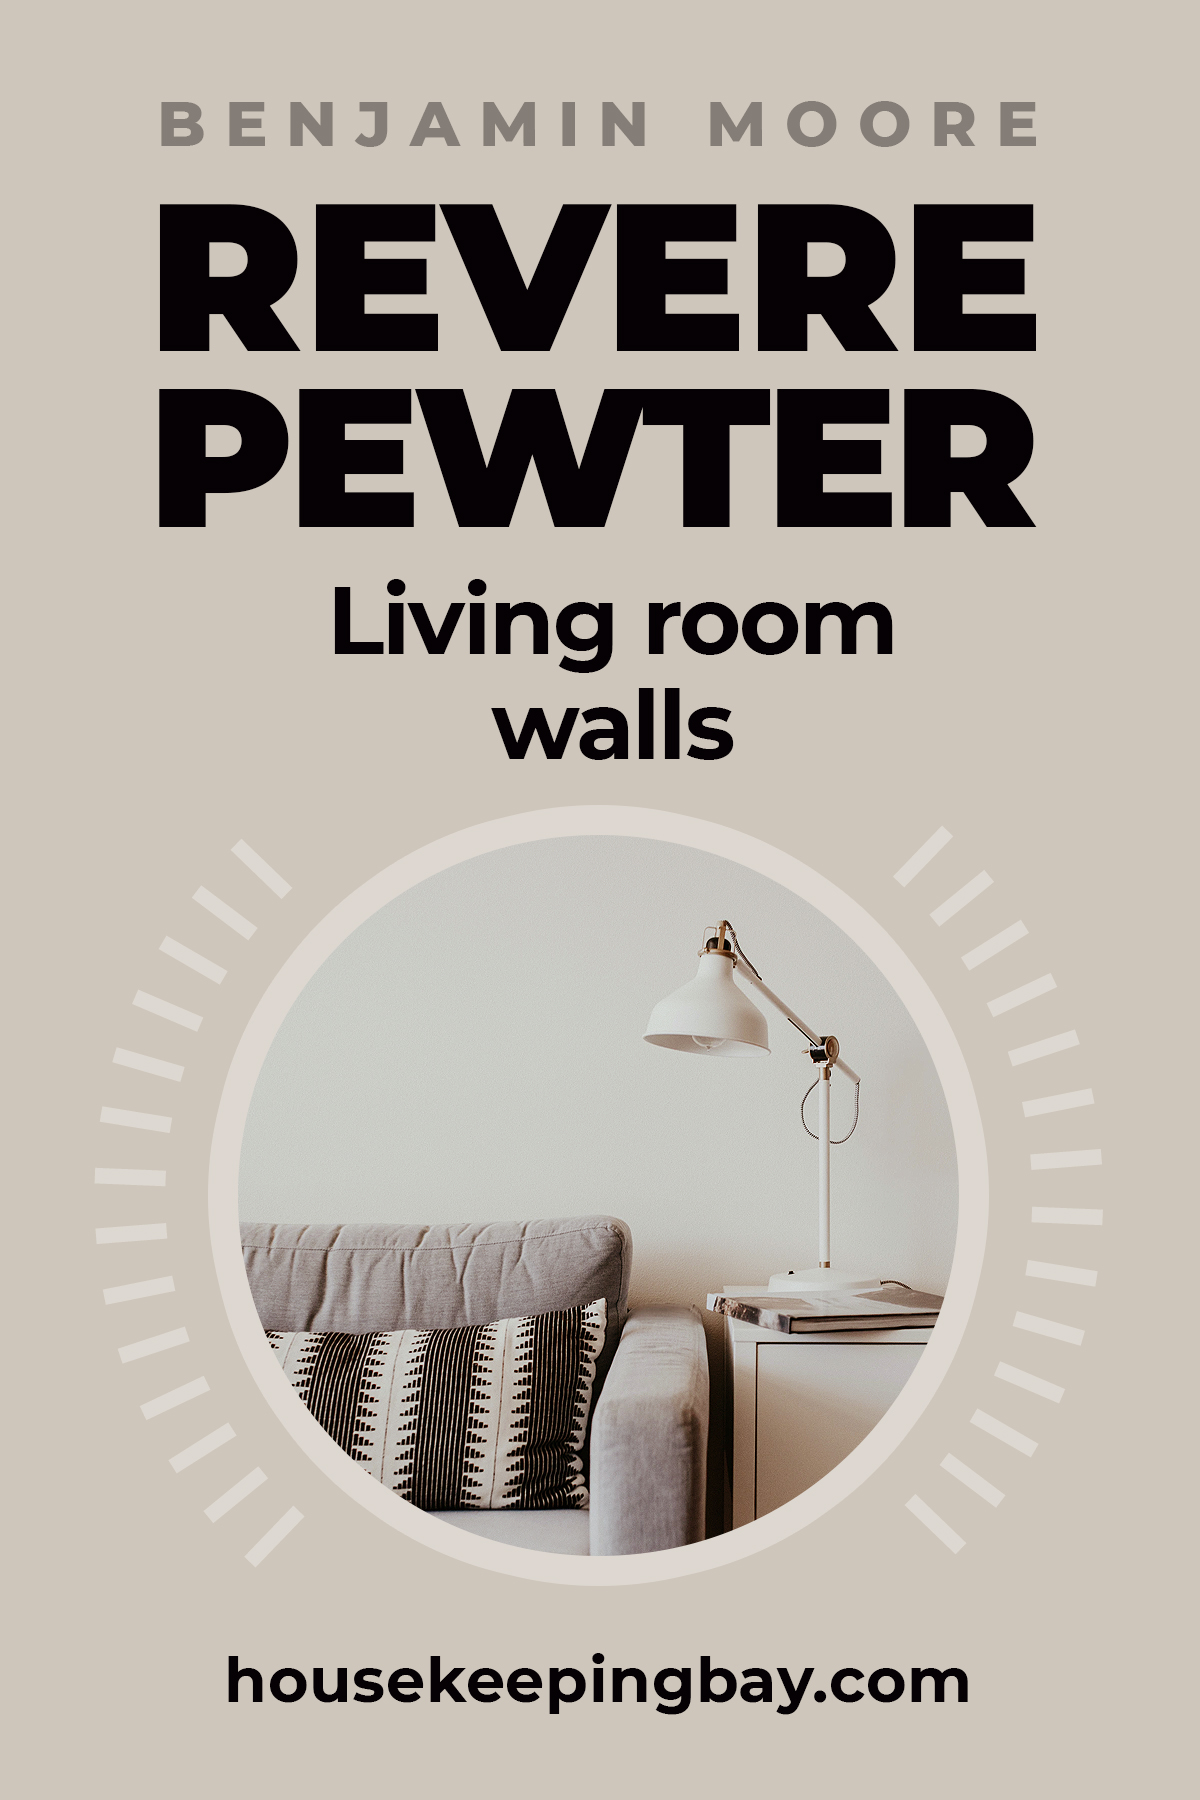 Revere pewter living room walls